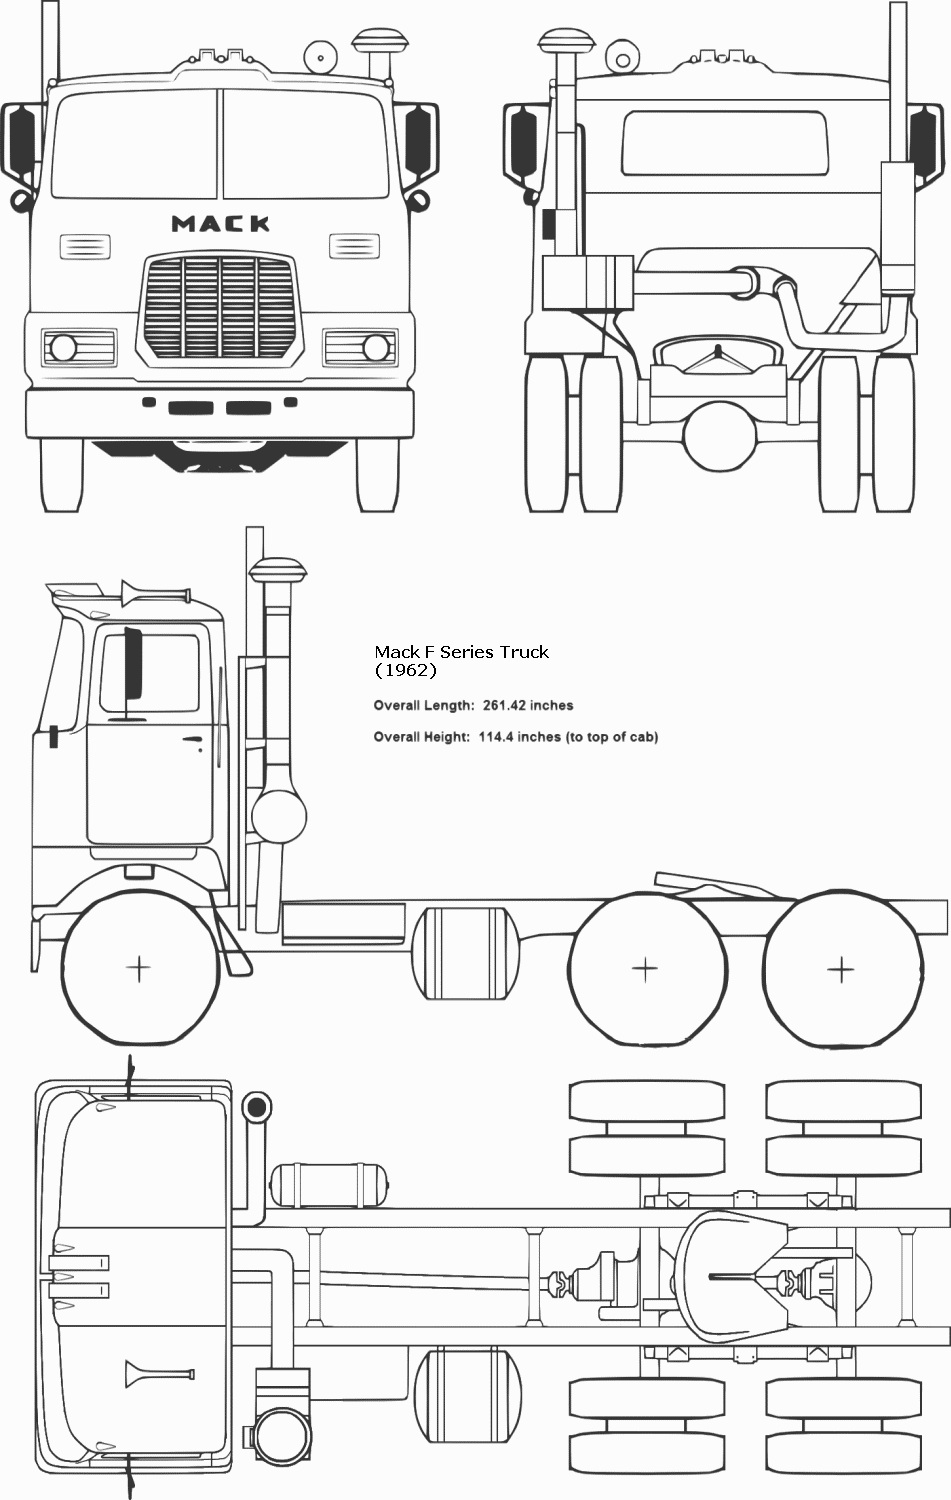 Mack F-Series Truck blueprint